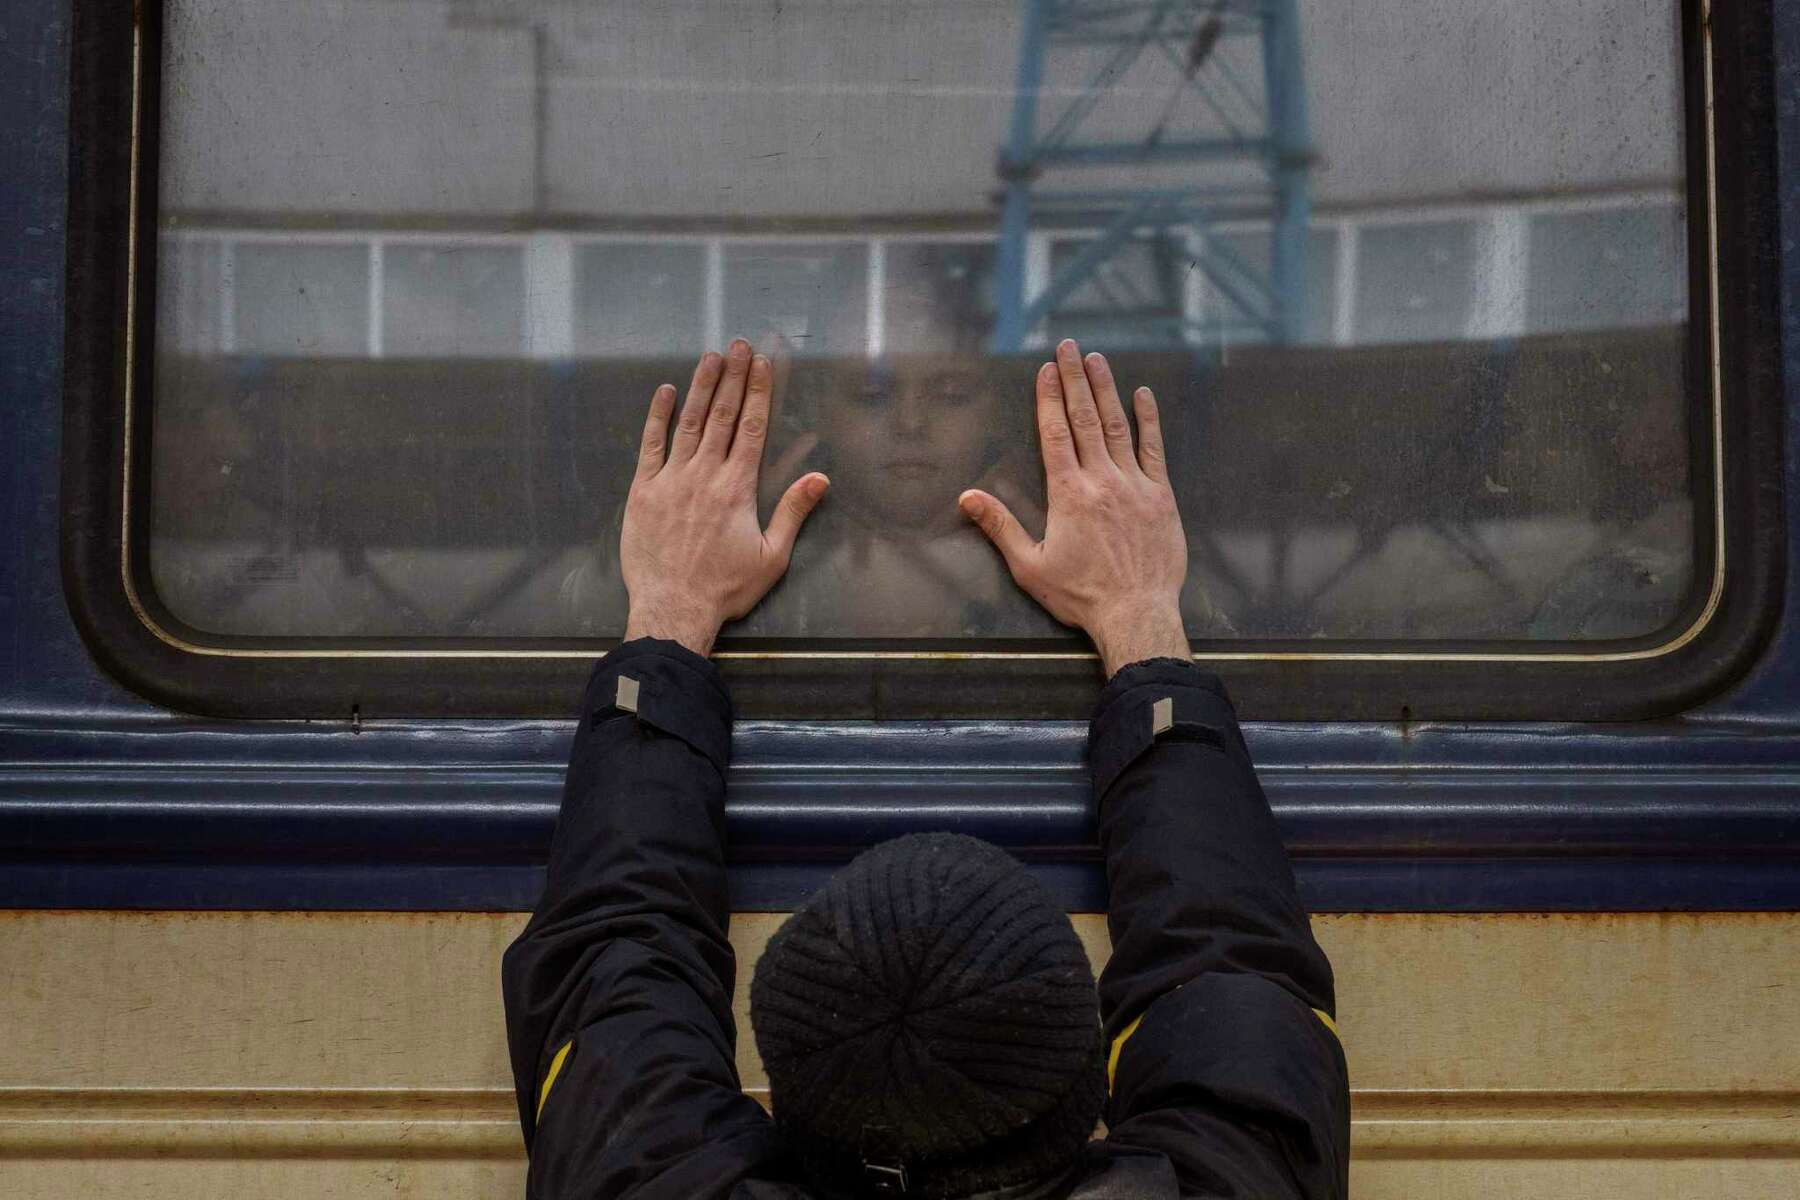 EMOCIONANTE: Fotógrafo registra foto impressionante de pai se despedindo da filha em trem em Kiev